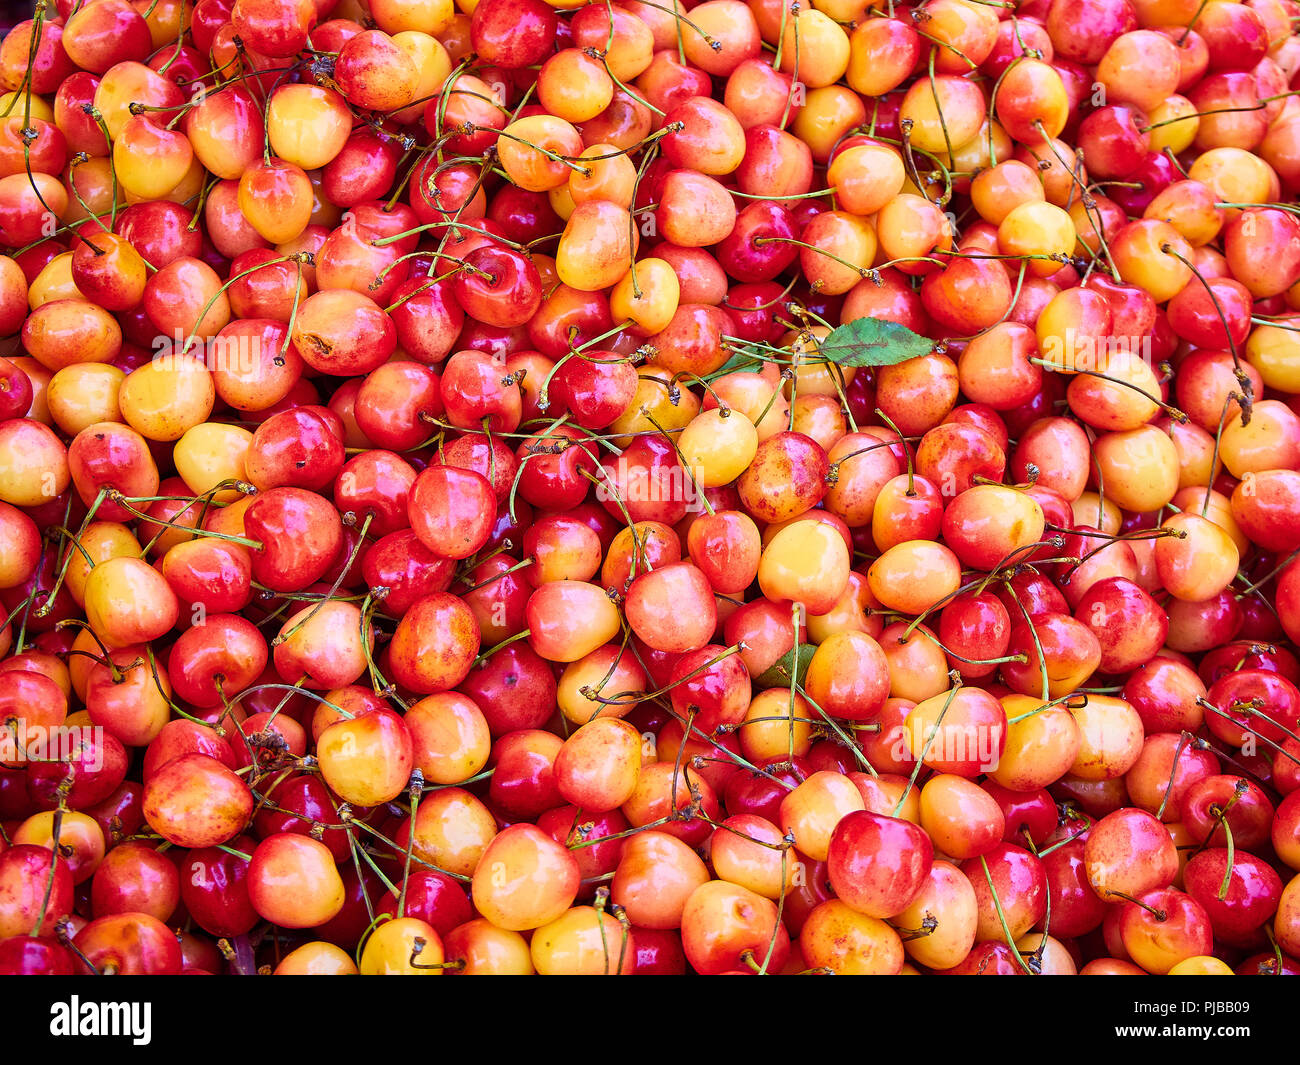 Red and yellow Rainier Cherries background. Stock Photo